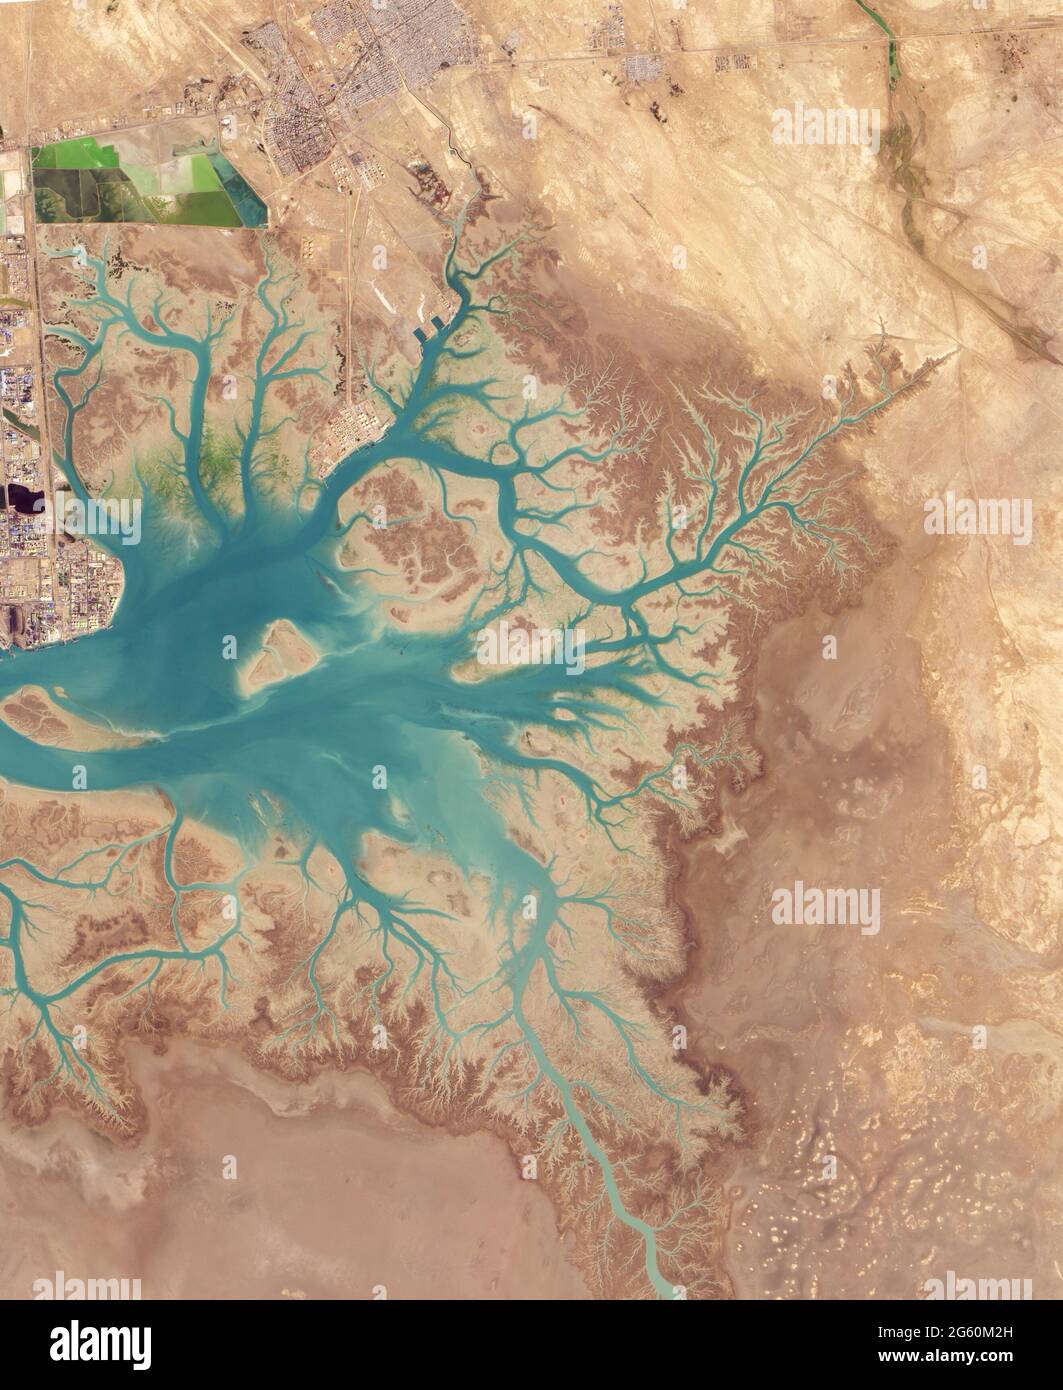 MUSA BAY, IRAN - 20. Januar 2015 - bevor es in den Persischen Golf abfließt, treffen sich mehrere Flüsse und Bäche im südlichen Iran in die Musa Bay, eine Bucht Stockfoto